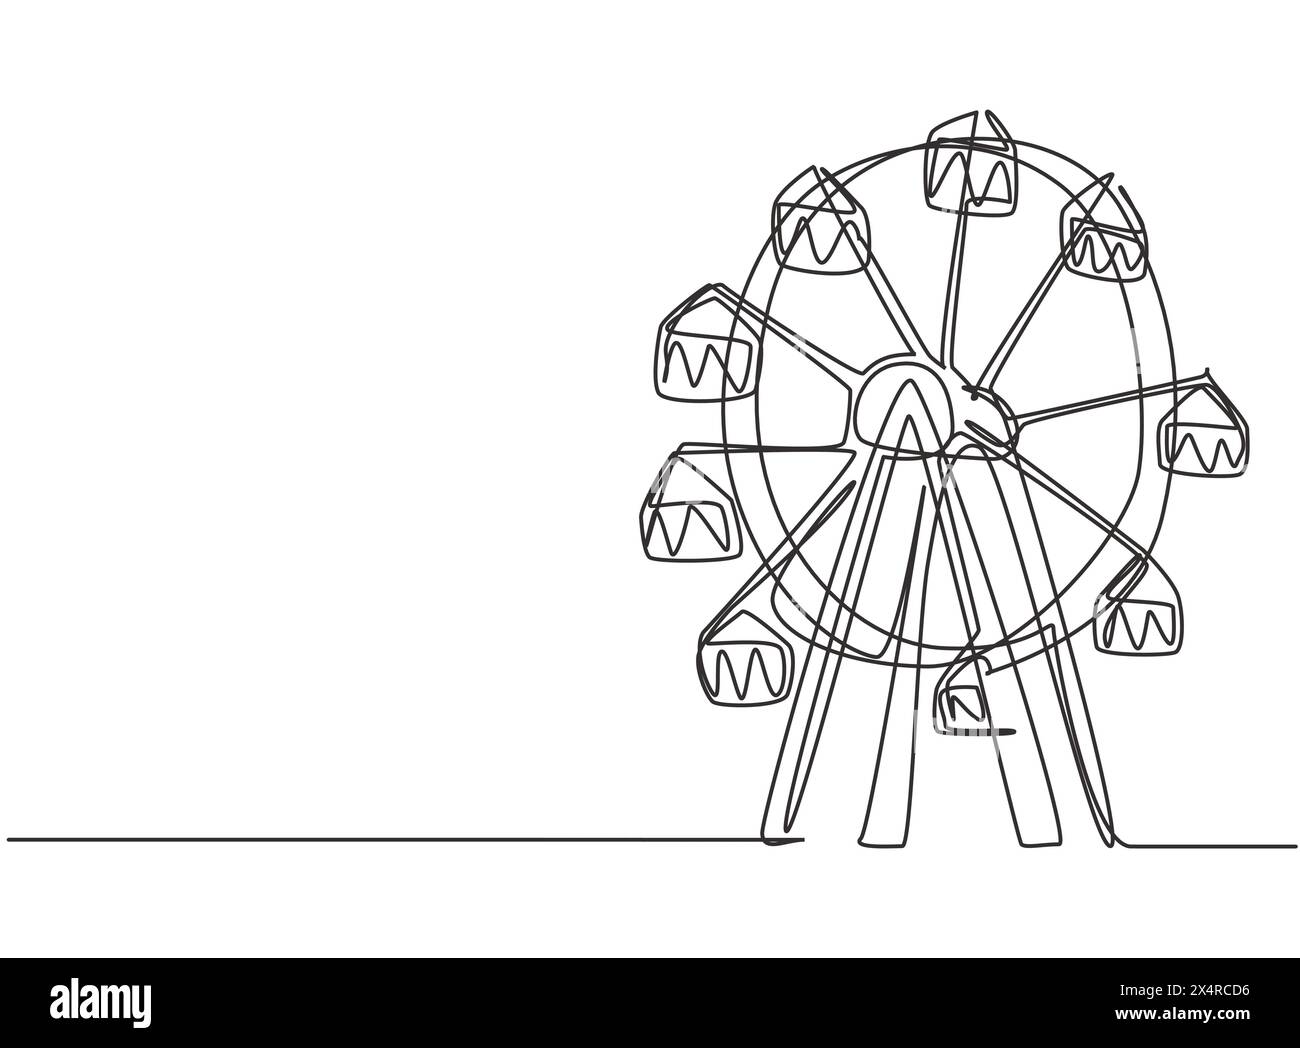 Simple dessin d'une ligne d'une grande roue dans un parc d'attractions, un grand cercle circulaire haut dans le ciel. Attractions récréatives intéressantes pour les familles. Illustration de Vecteur